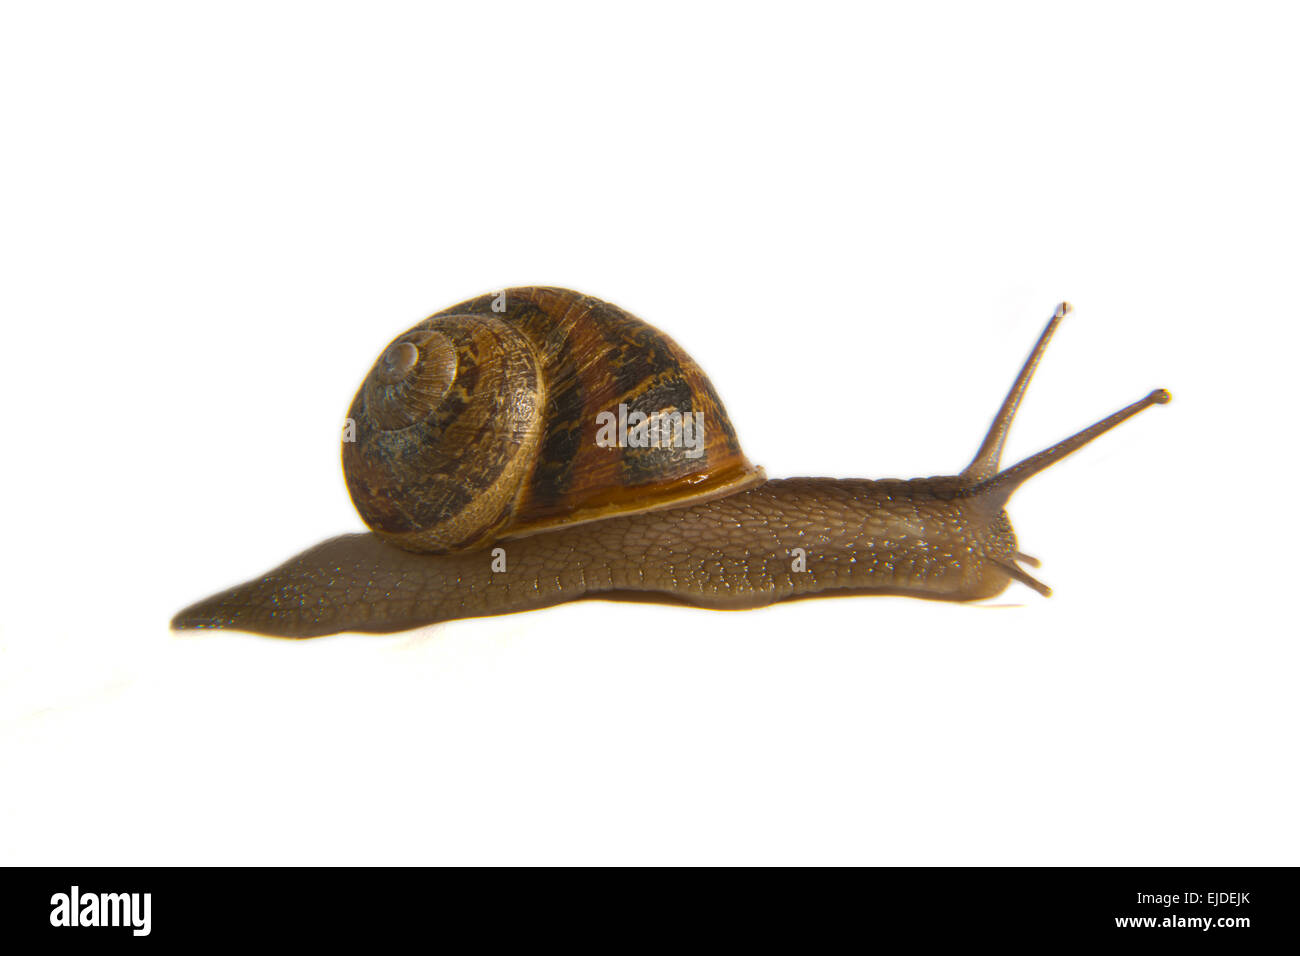 Garden Snail on side over white background. Macro shot Stock Photo